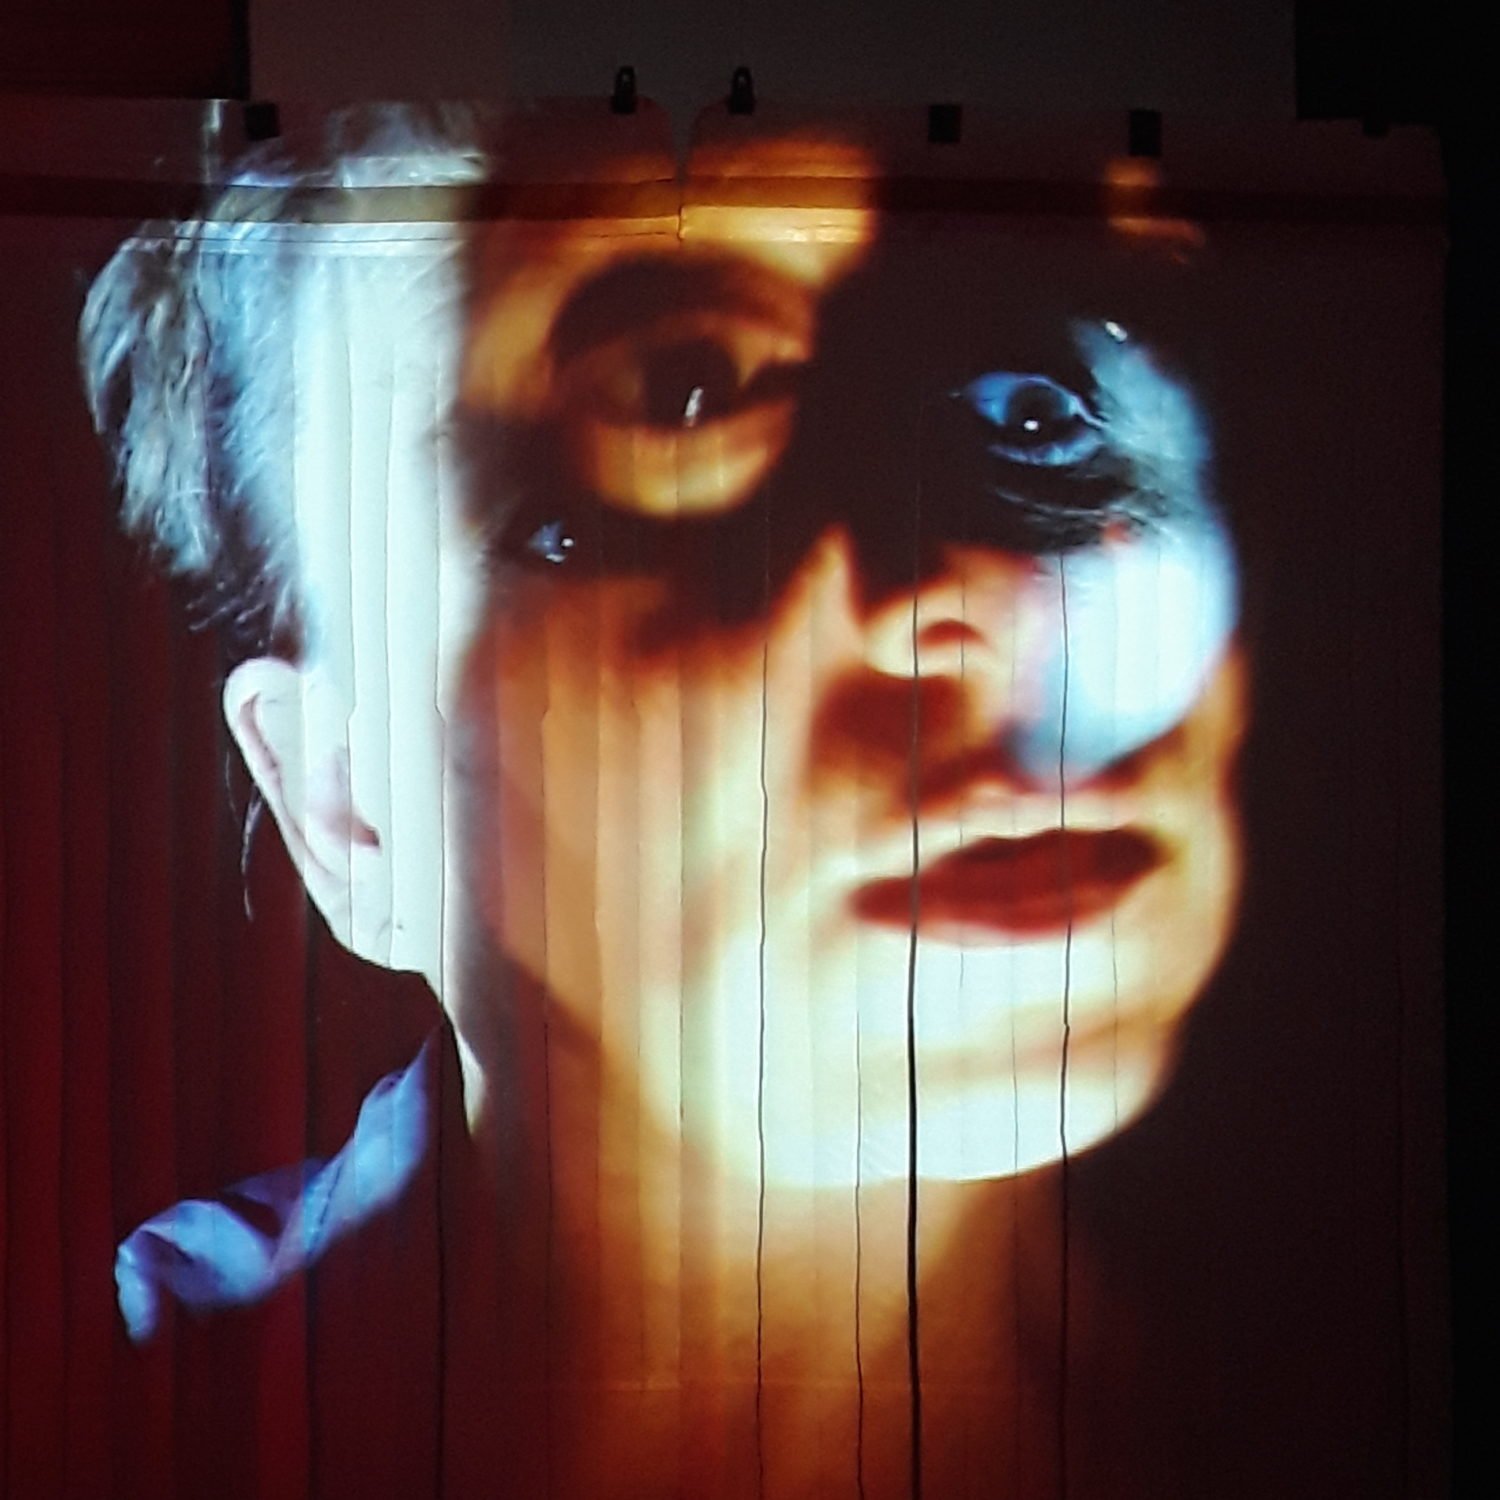 She She Pop zeigen im September in Berlin im Theater HAU ihre Sicht auf "Hexploitation". Foto: She She Pop